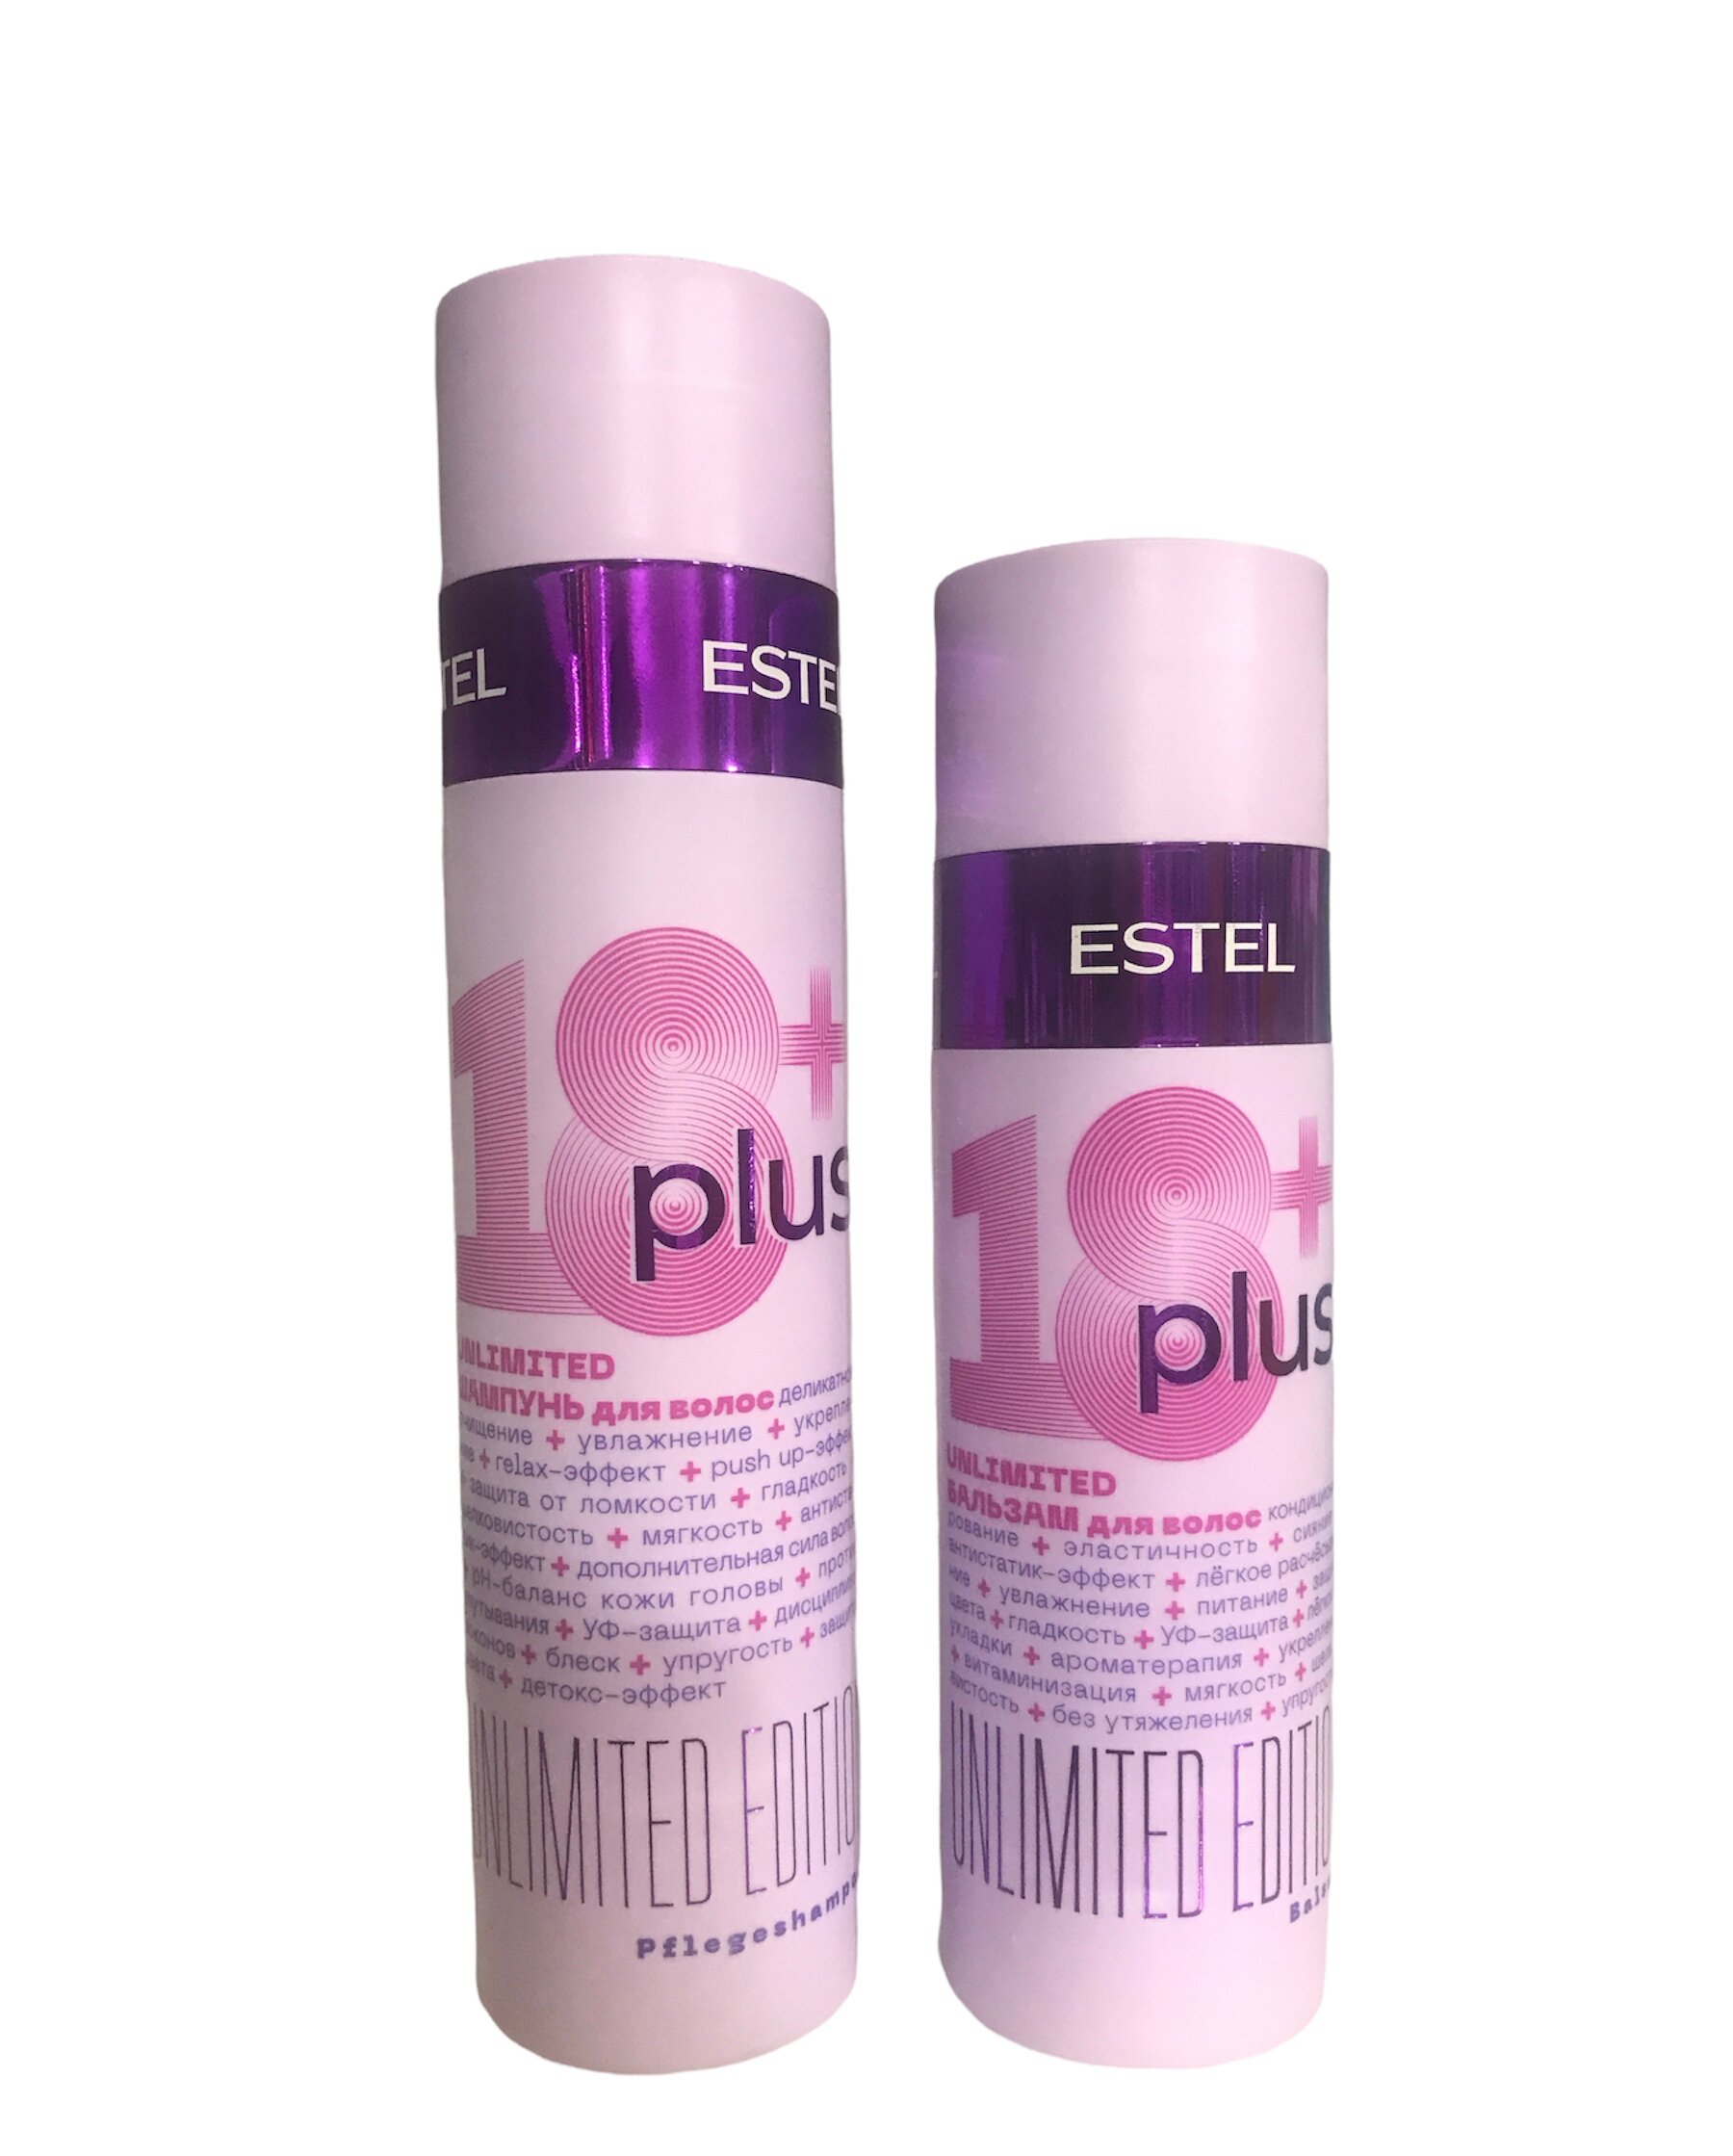 Набор ESTEL 18+ Plus набор для ухода за волосами шампунь 250 мл + бальзам 200 мл набор для ухода за волосами accessories расческа массажная брашинг гребень